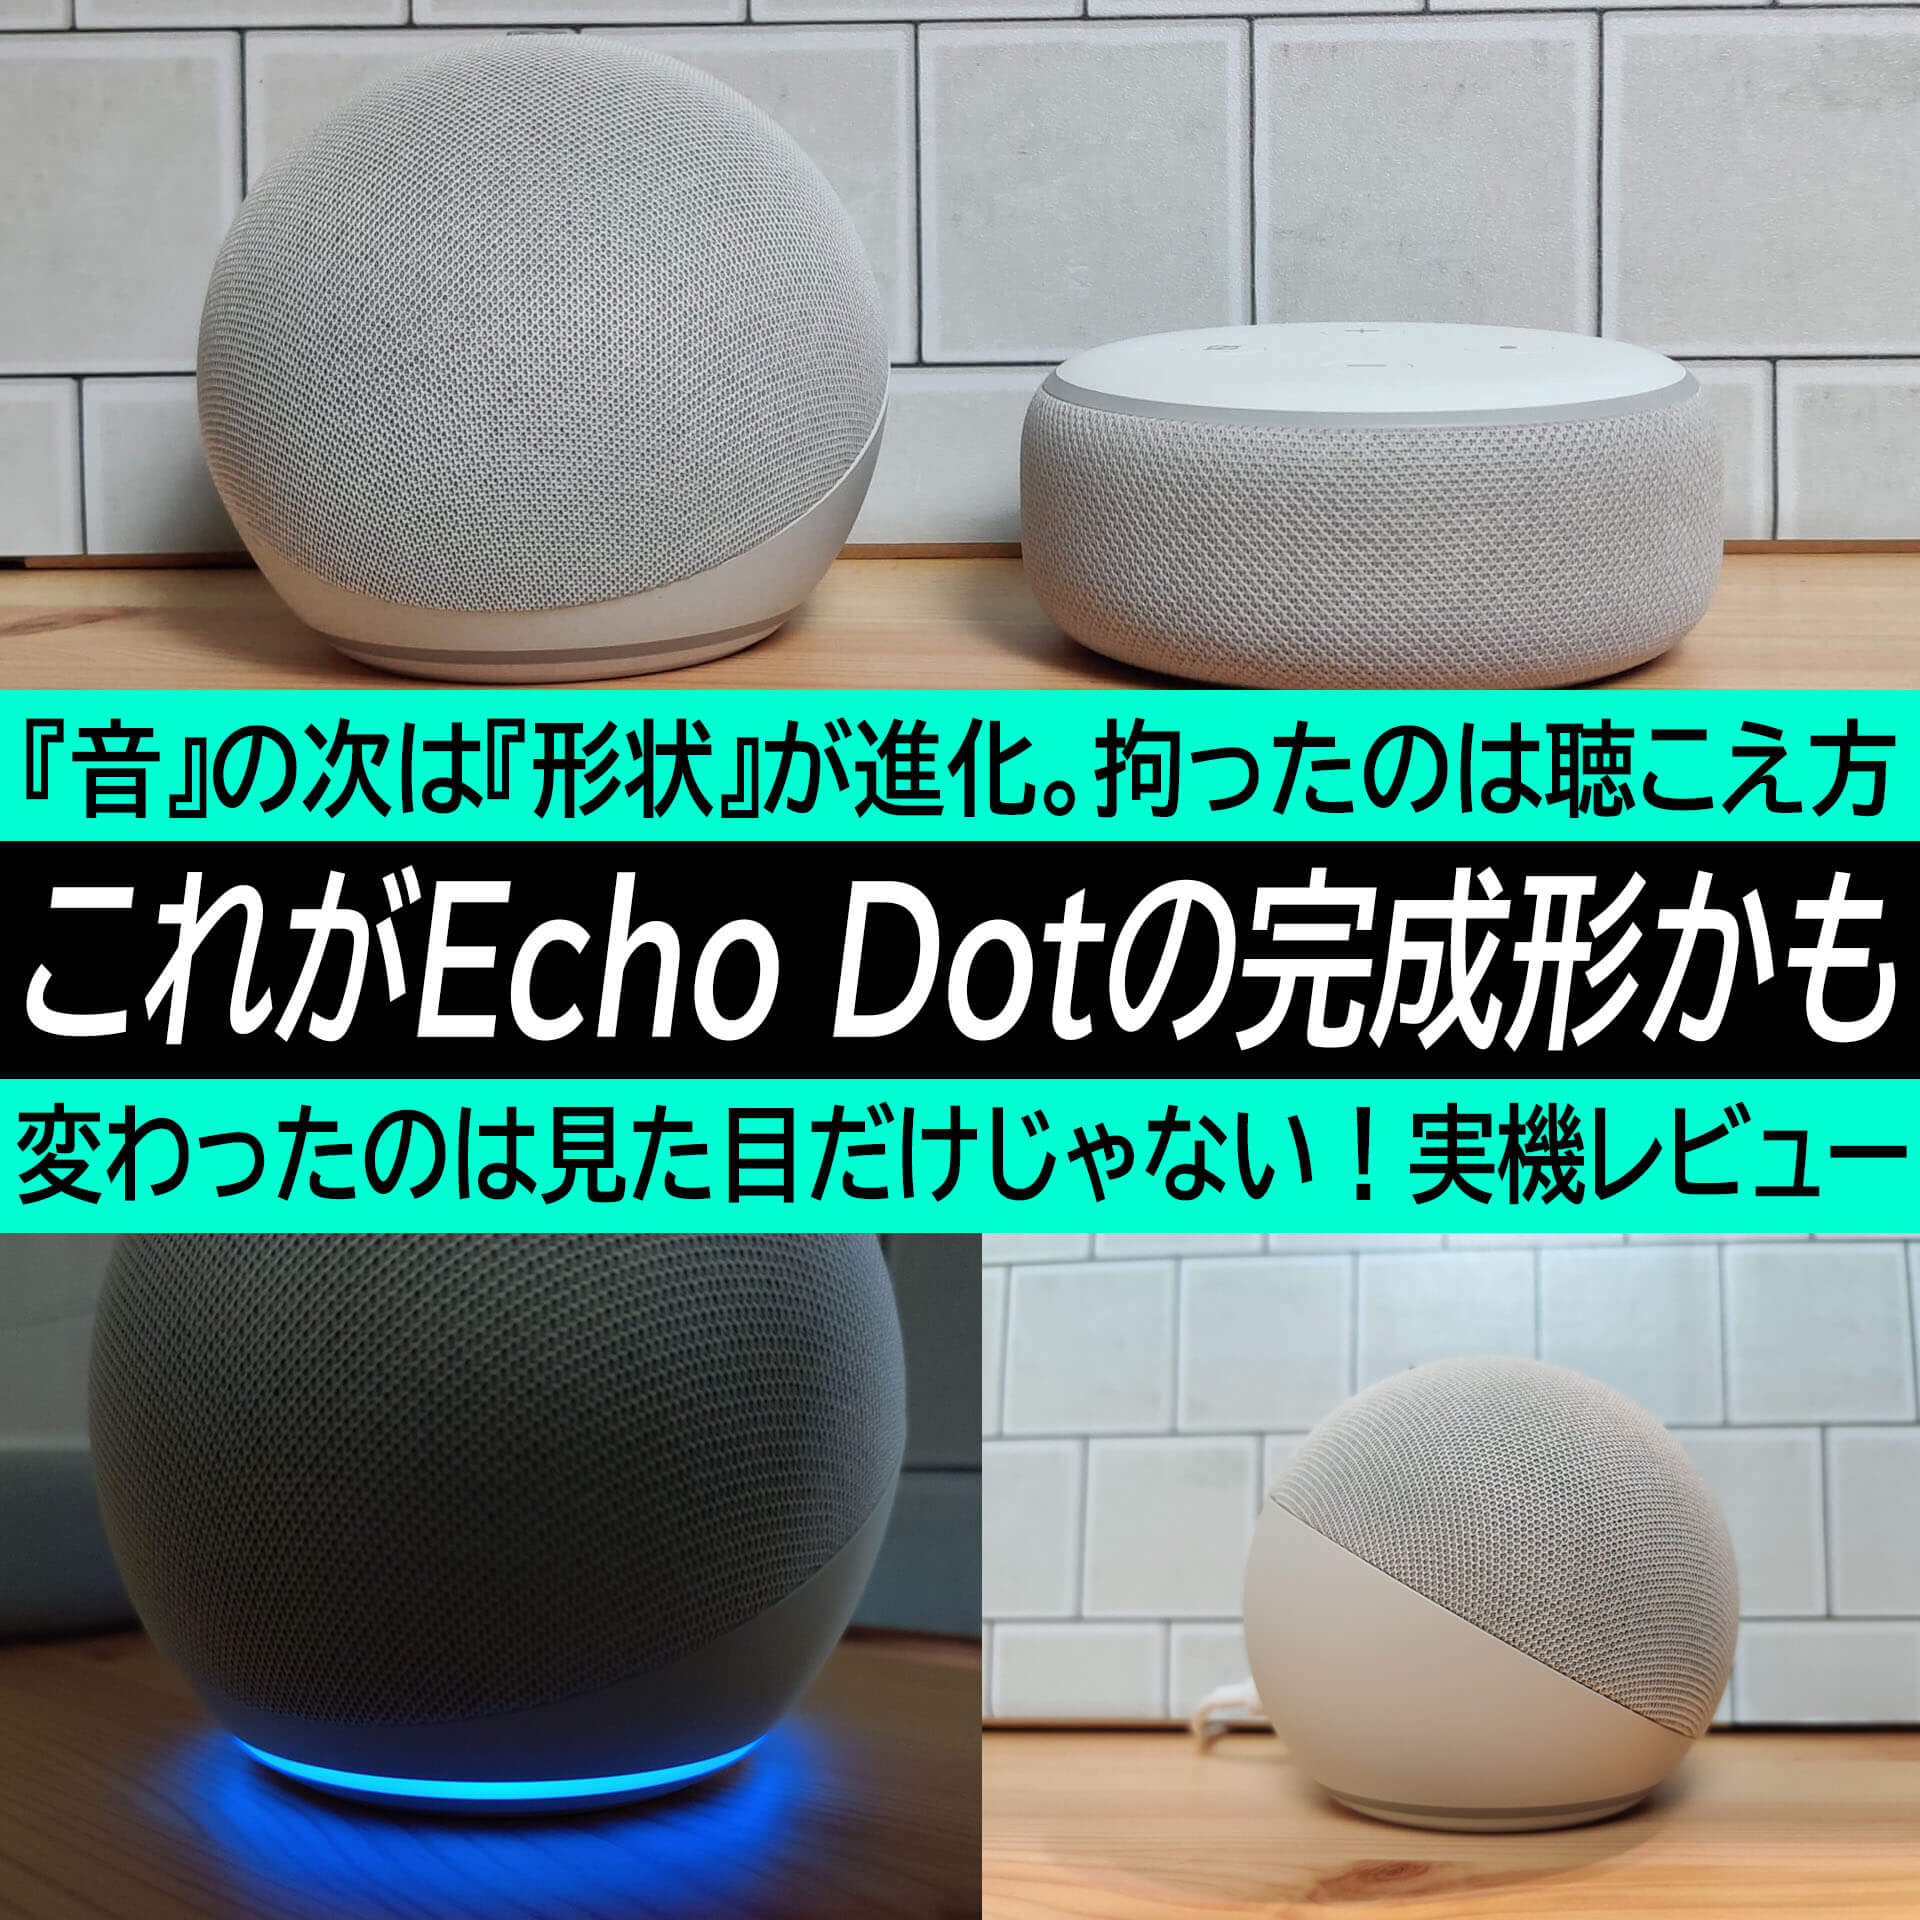 これがEcho Dotの完成形！？第3世代で『音』を大幅改良。第4世代では『聴こえ方』を改善。小型でもココまでイケる！